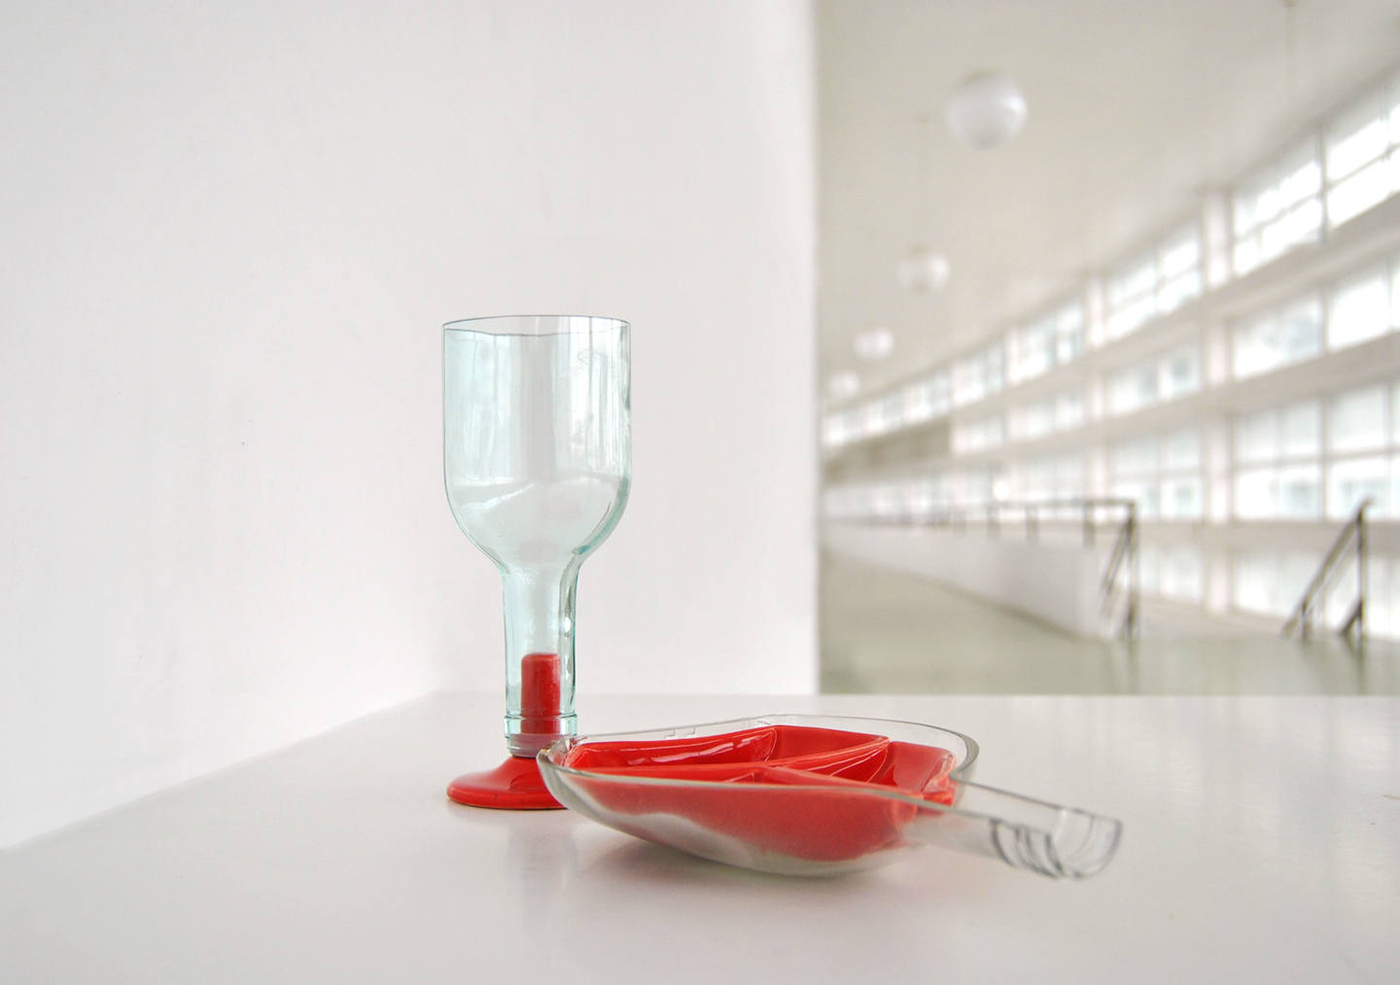 ceramic glass Prduct Design dish colors food design